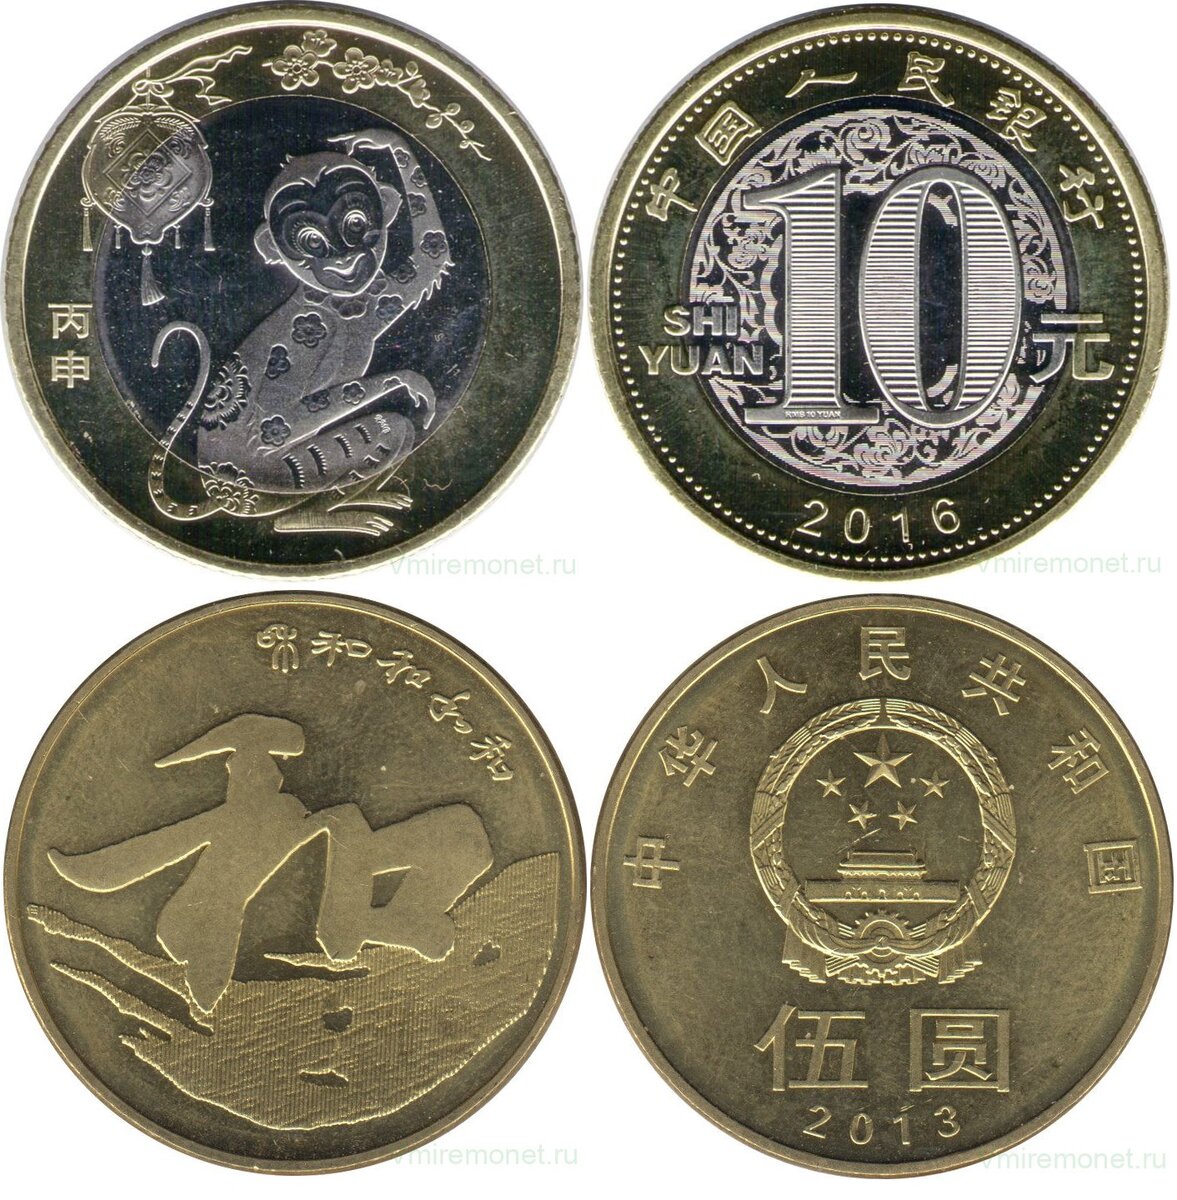 25 юаней в тенге. Картинка 10 юаней 2013.